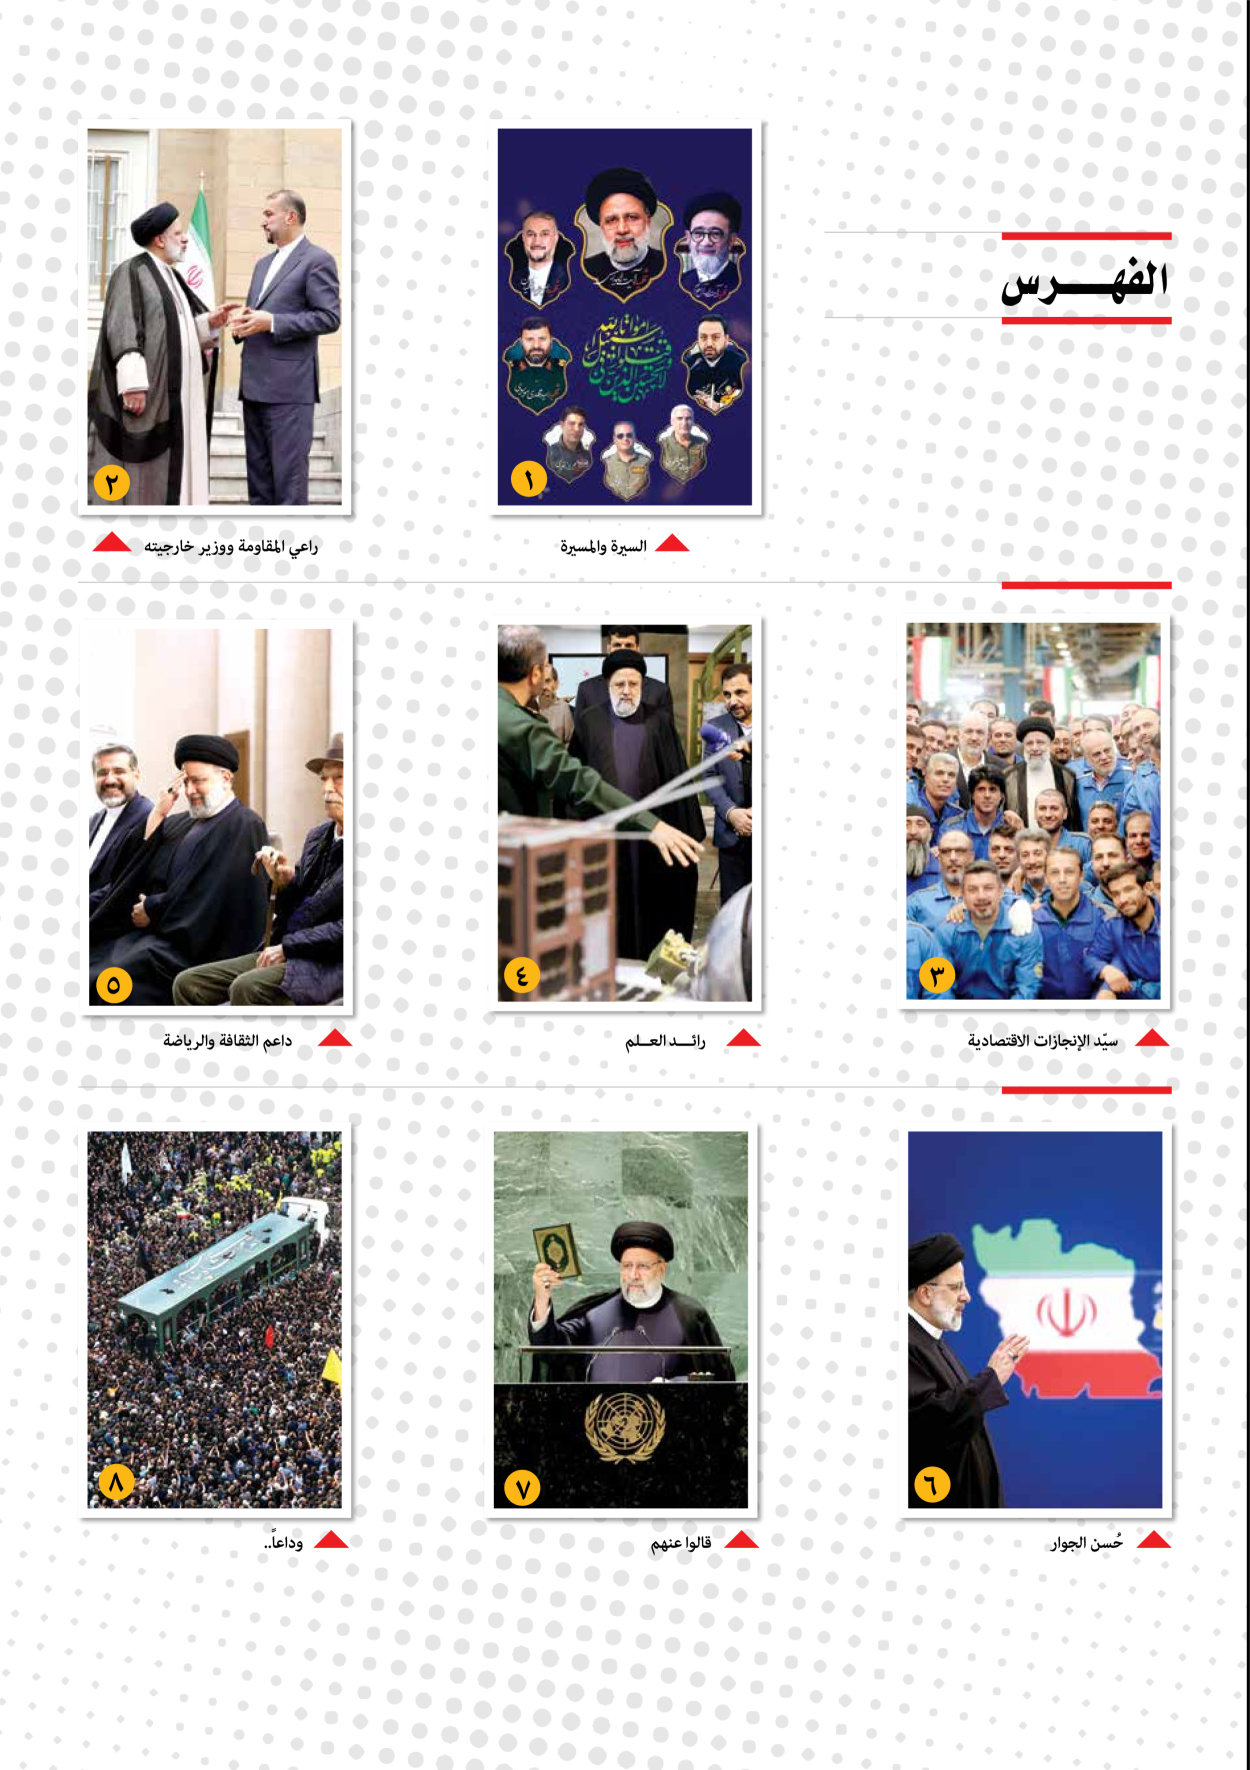 صحیفة ایران الدولیة الوفاق - ملحق ویژه نامه چهلم شهید رییسی - ٢٩ يونيو ٢٠٢٤ - الصفحة ۳